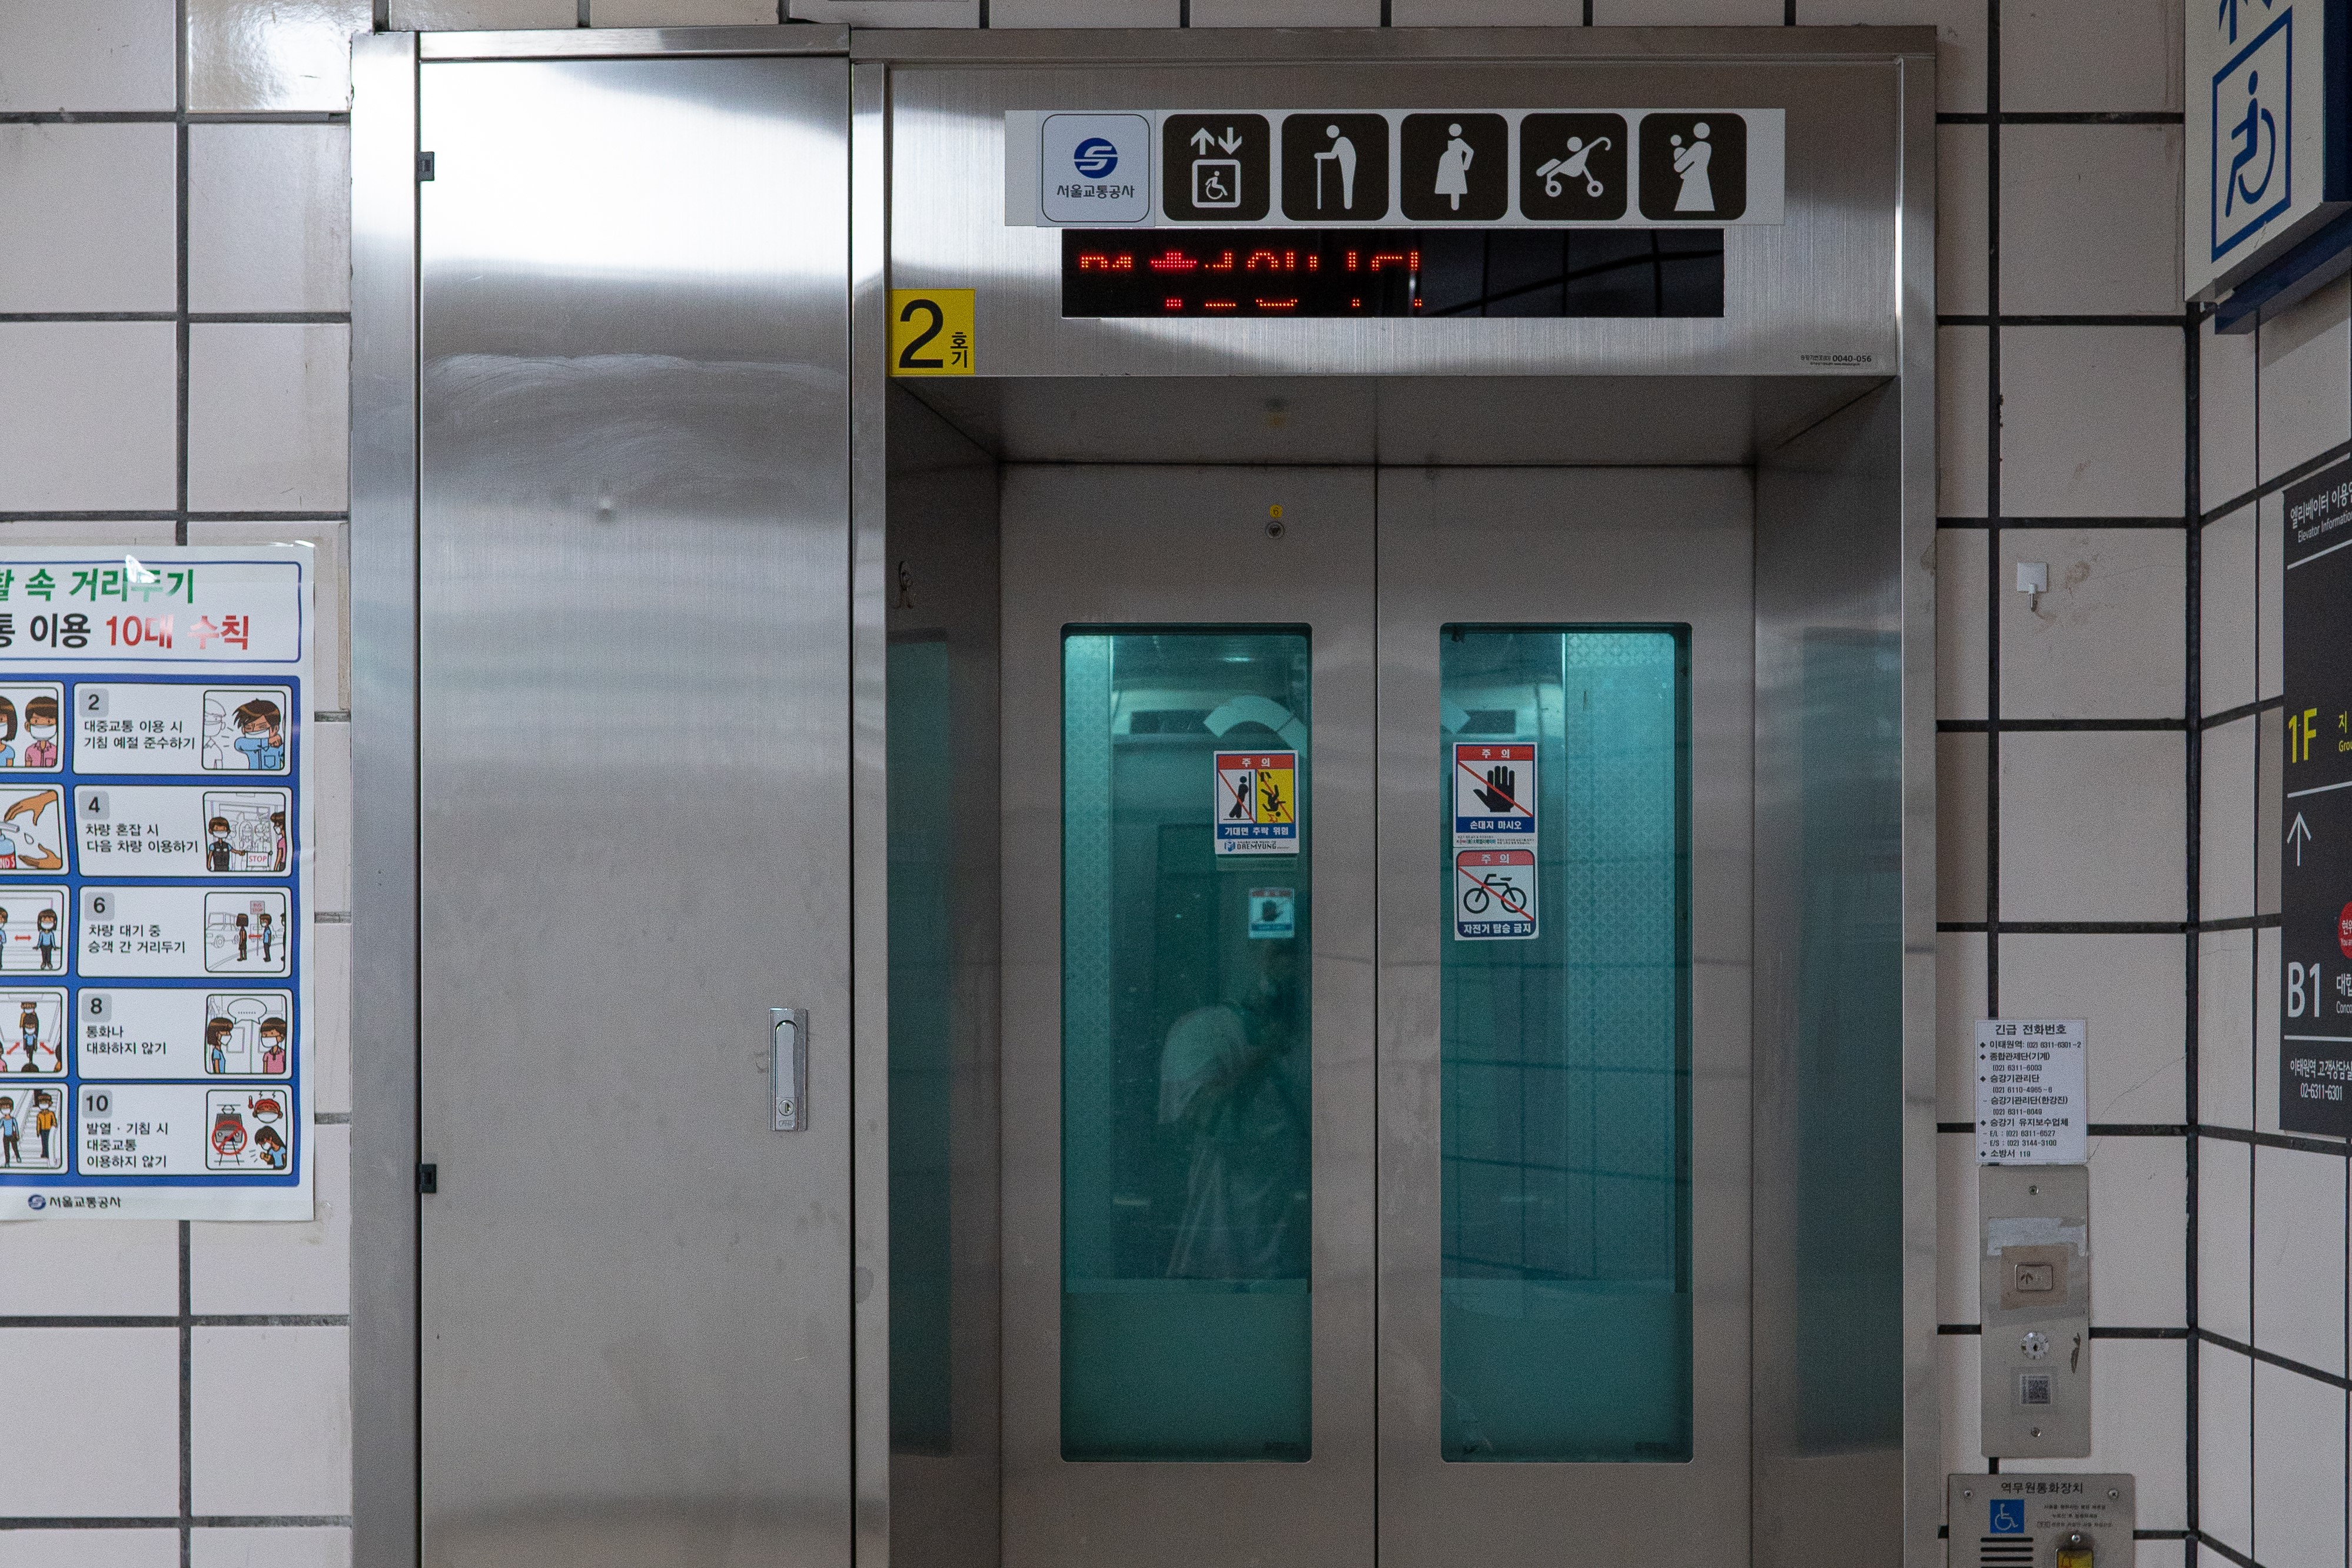 엘리베이터0 : 엘리베이터로 이용 가능해서 노약자, 장애인 등 접근성 우수